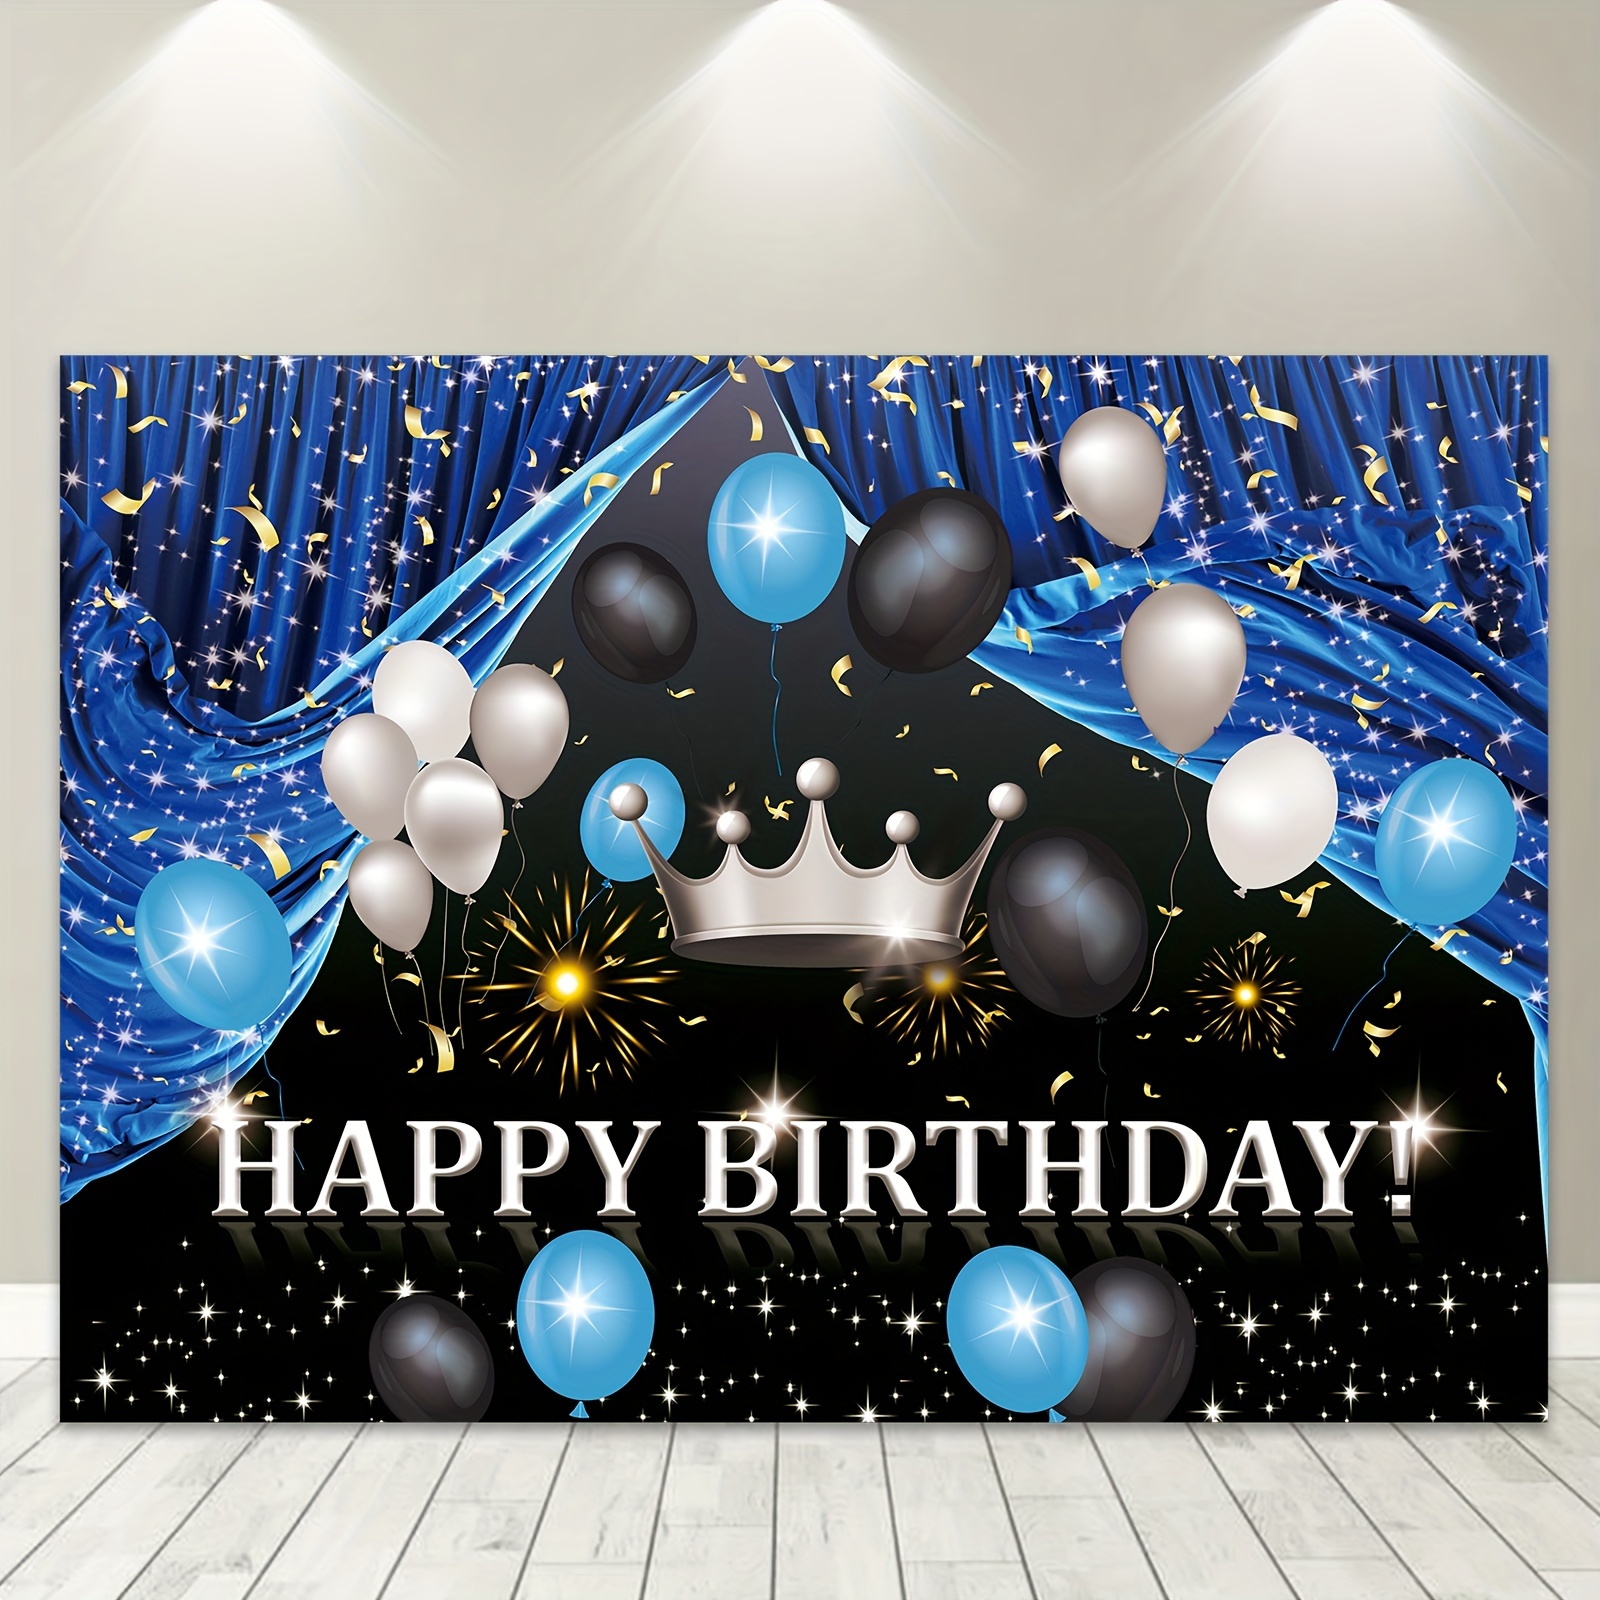 Fondo de feliz 60 cumpleaños para sesión fotográfica, cartel para fiesta de  cumpleaños con purpurina dorada, decoración de fondo, regalo, globos